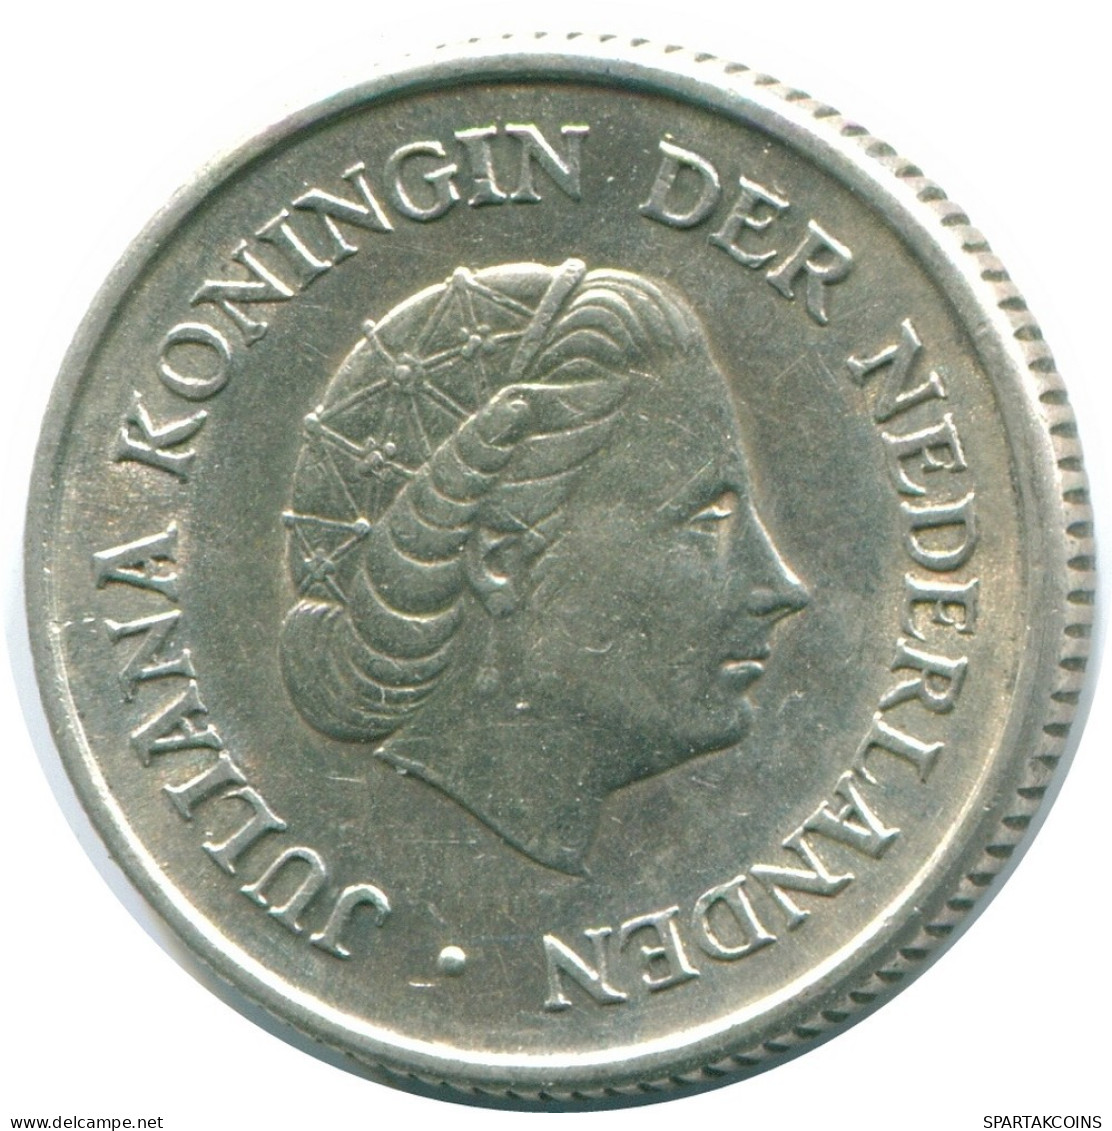 1/4 GULDEN 1967 NIEDERLÄNDISCHE ANTILLEN SILBER Koloniale Münze #NL11467.4.D.A - Nederlandse Antillen